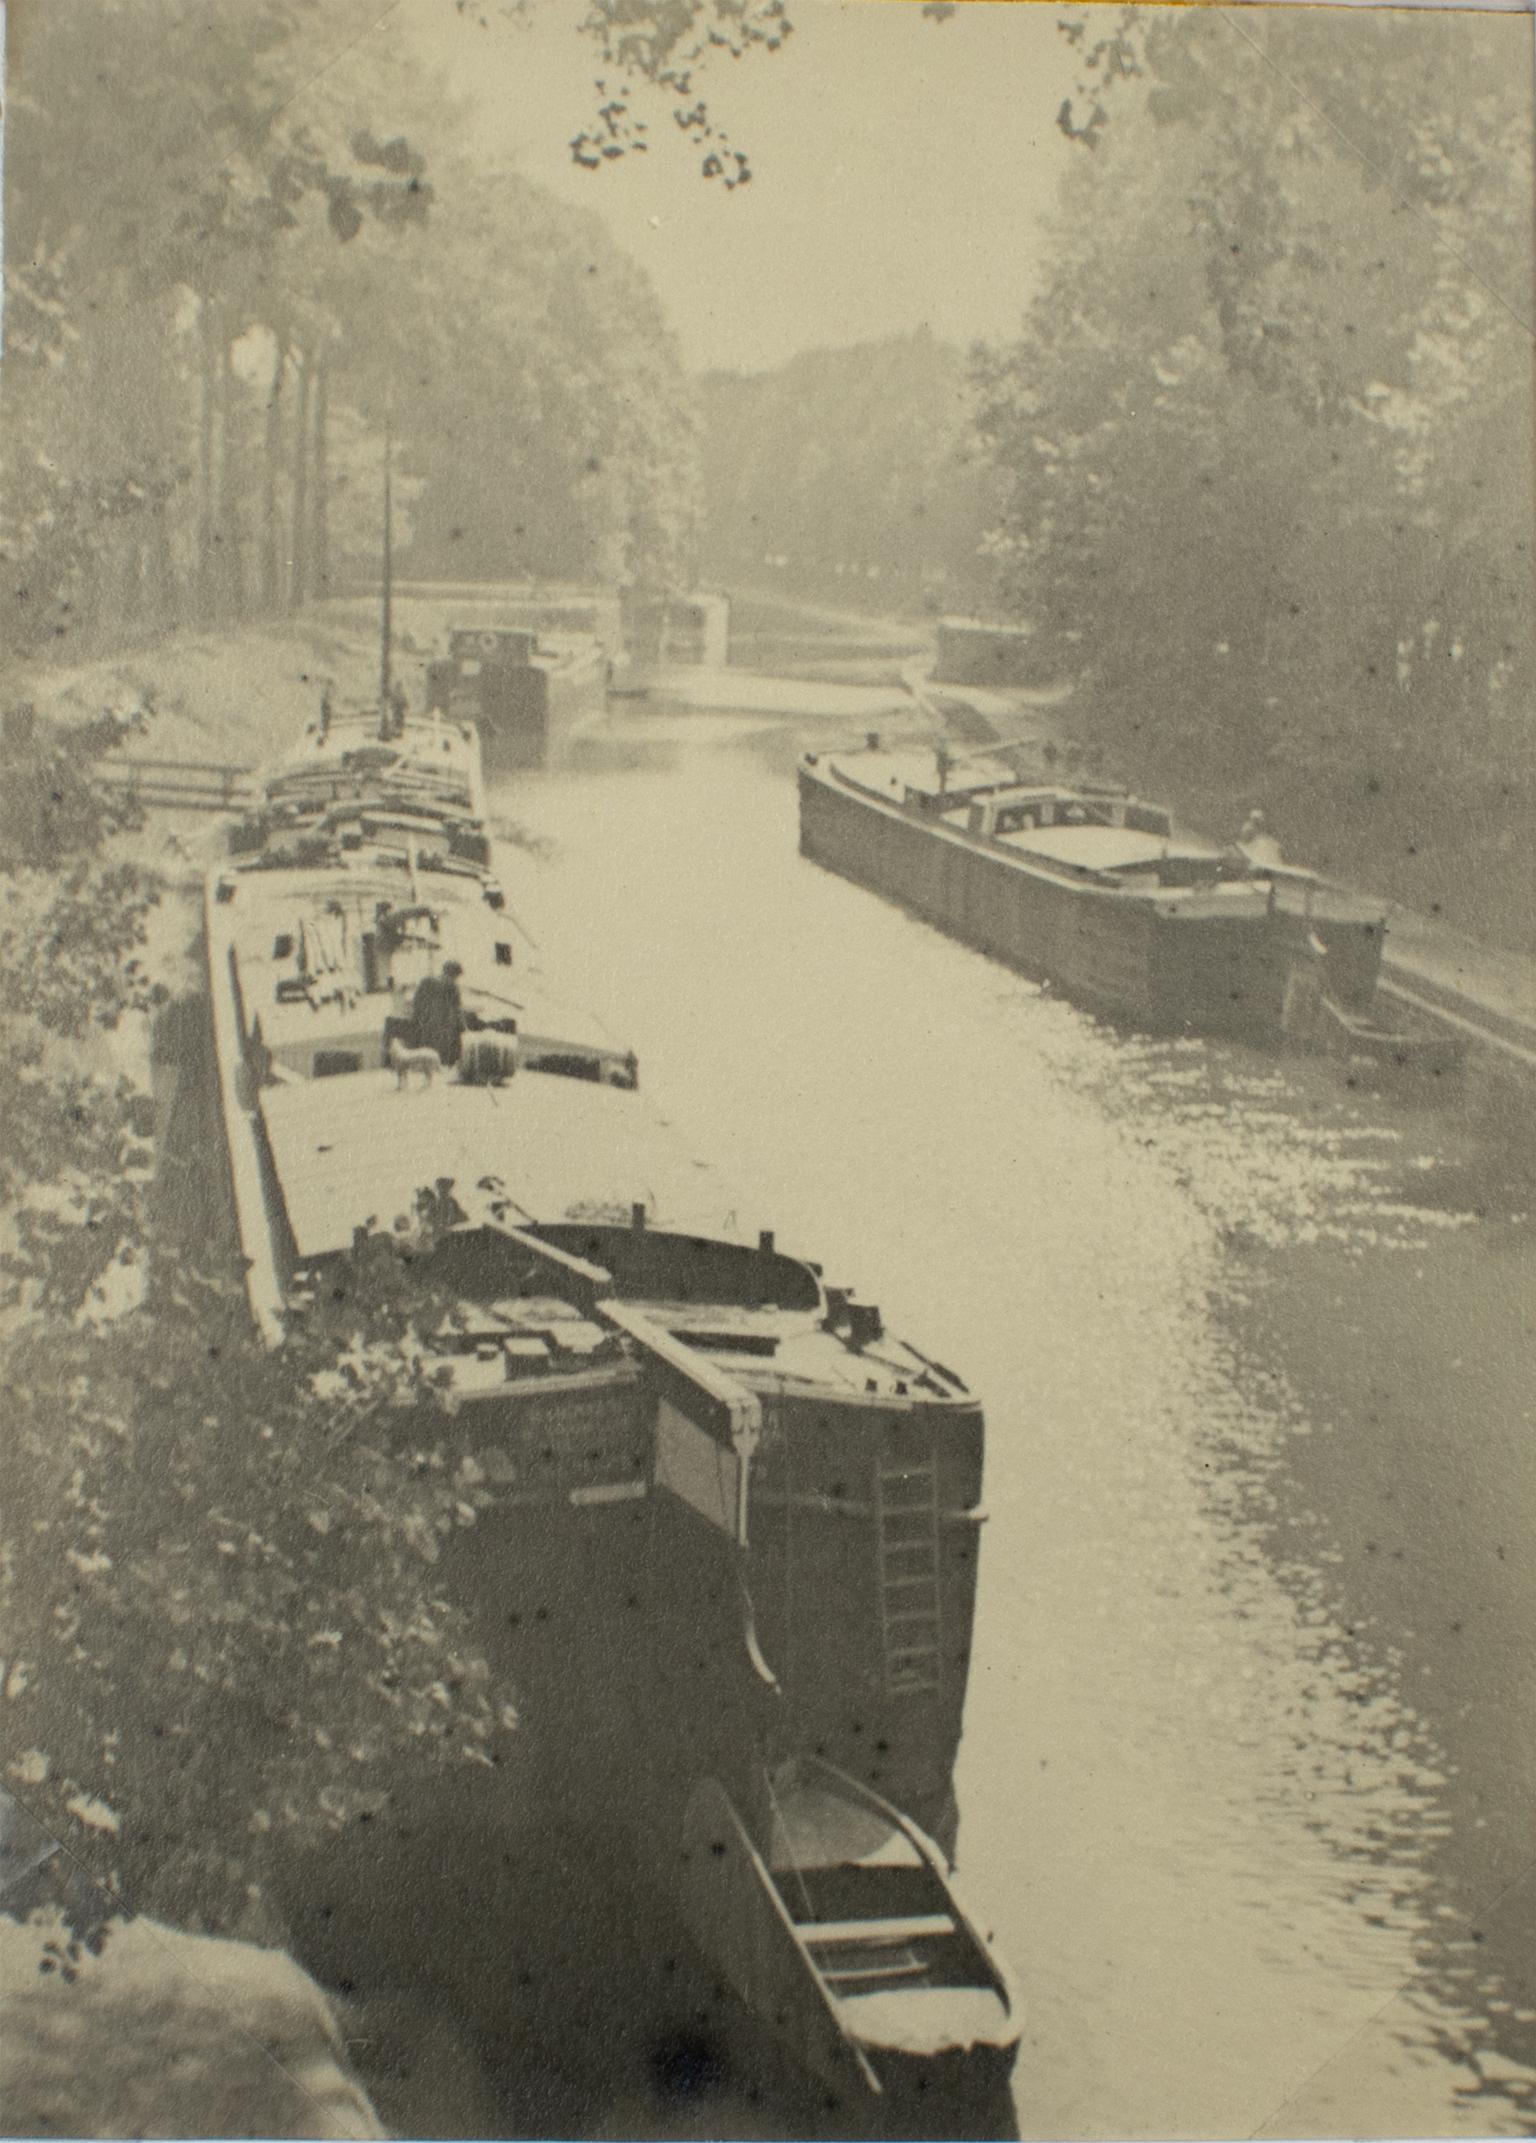 Barges am Seine-Fluss in der Nähe von Paris, 1926 – Silber-Gelatine-B und W-Fotografie